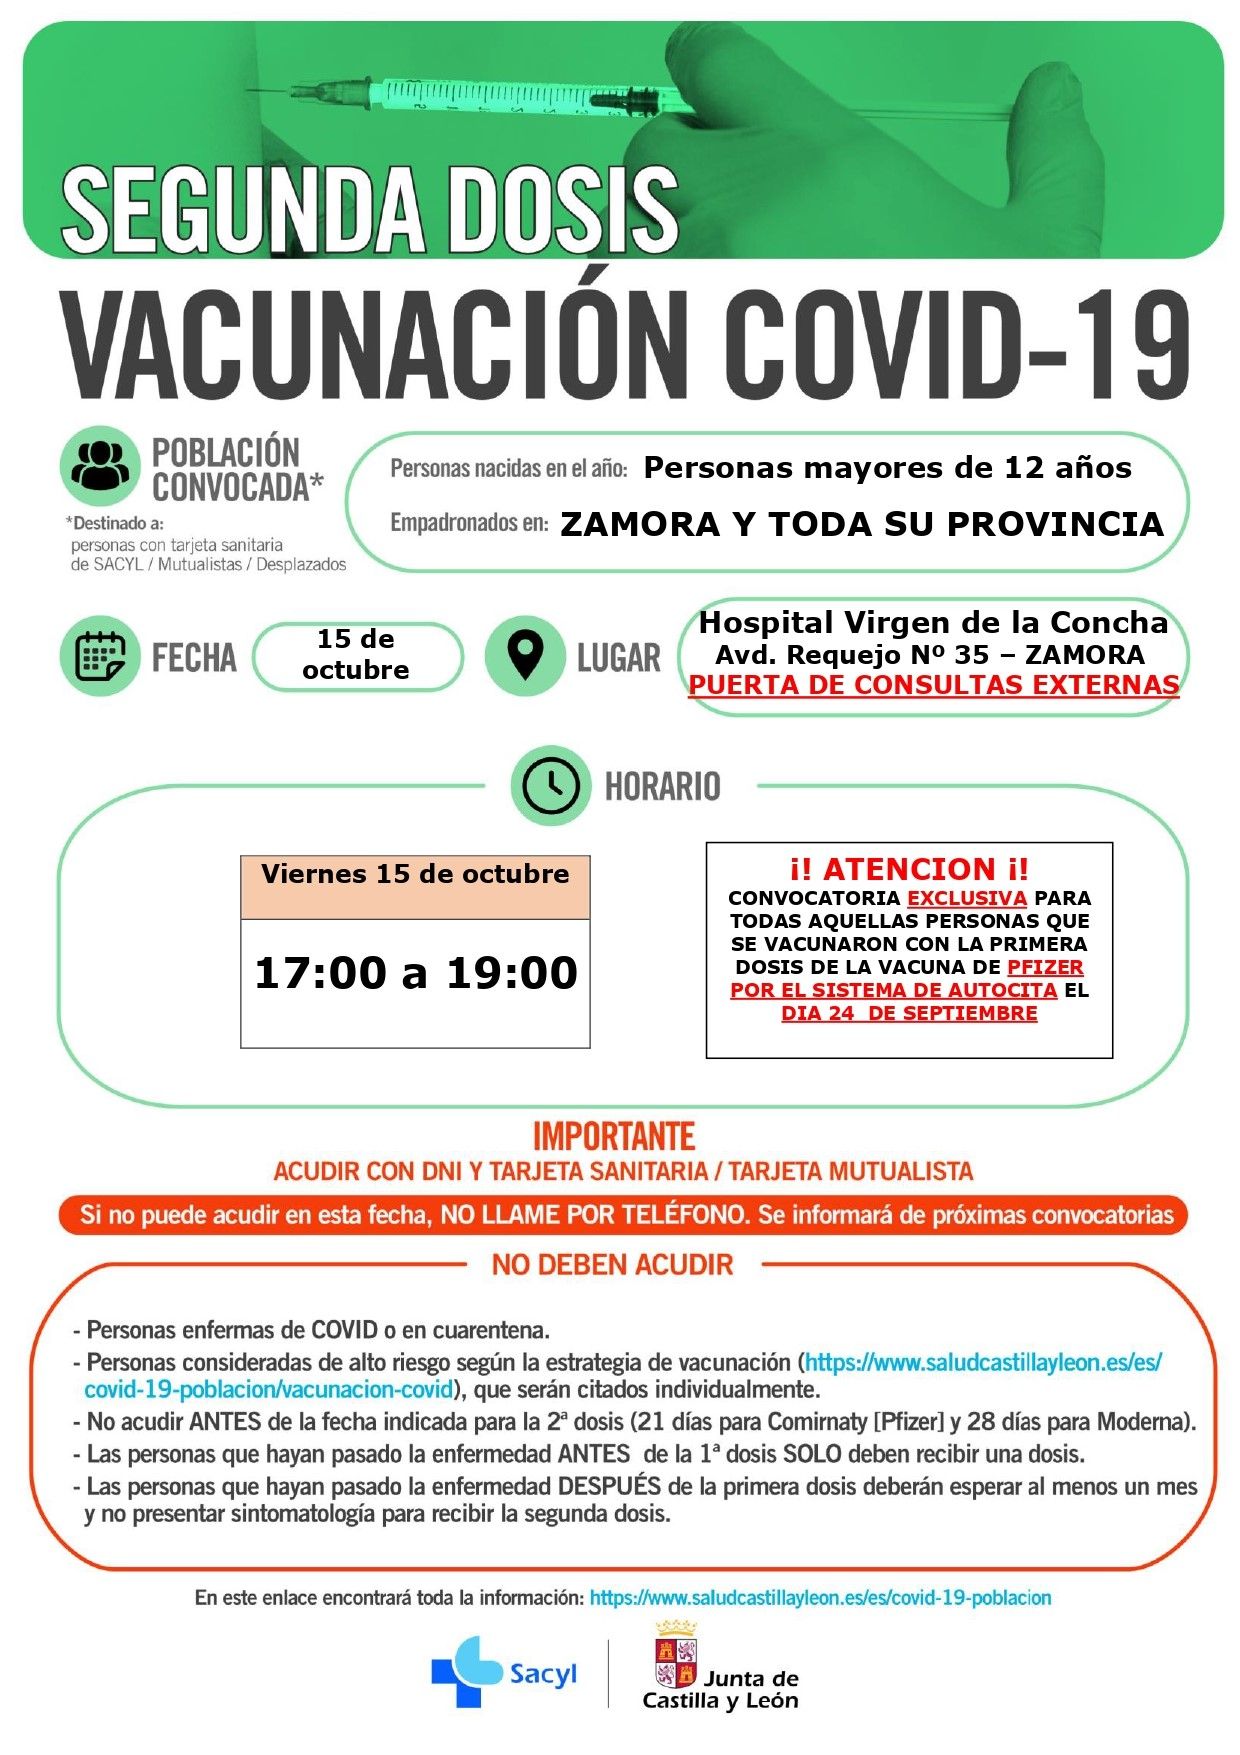 Vacunación con segunda dosis de Pfizer para los vacunados con la primera en Zamora el 24 de septiembre